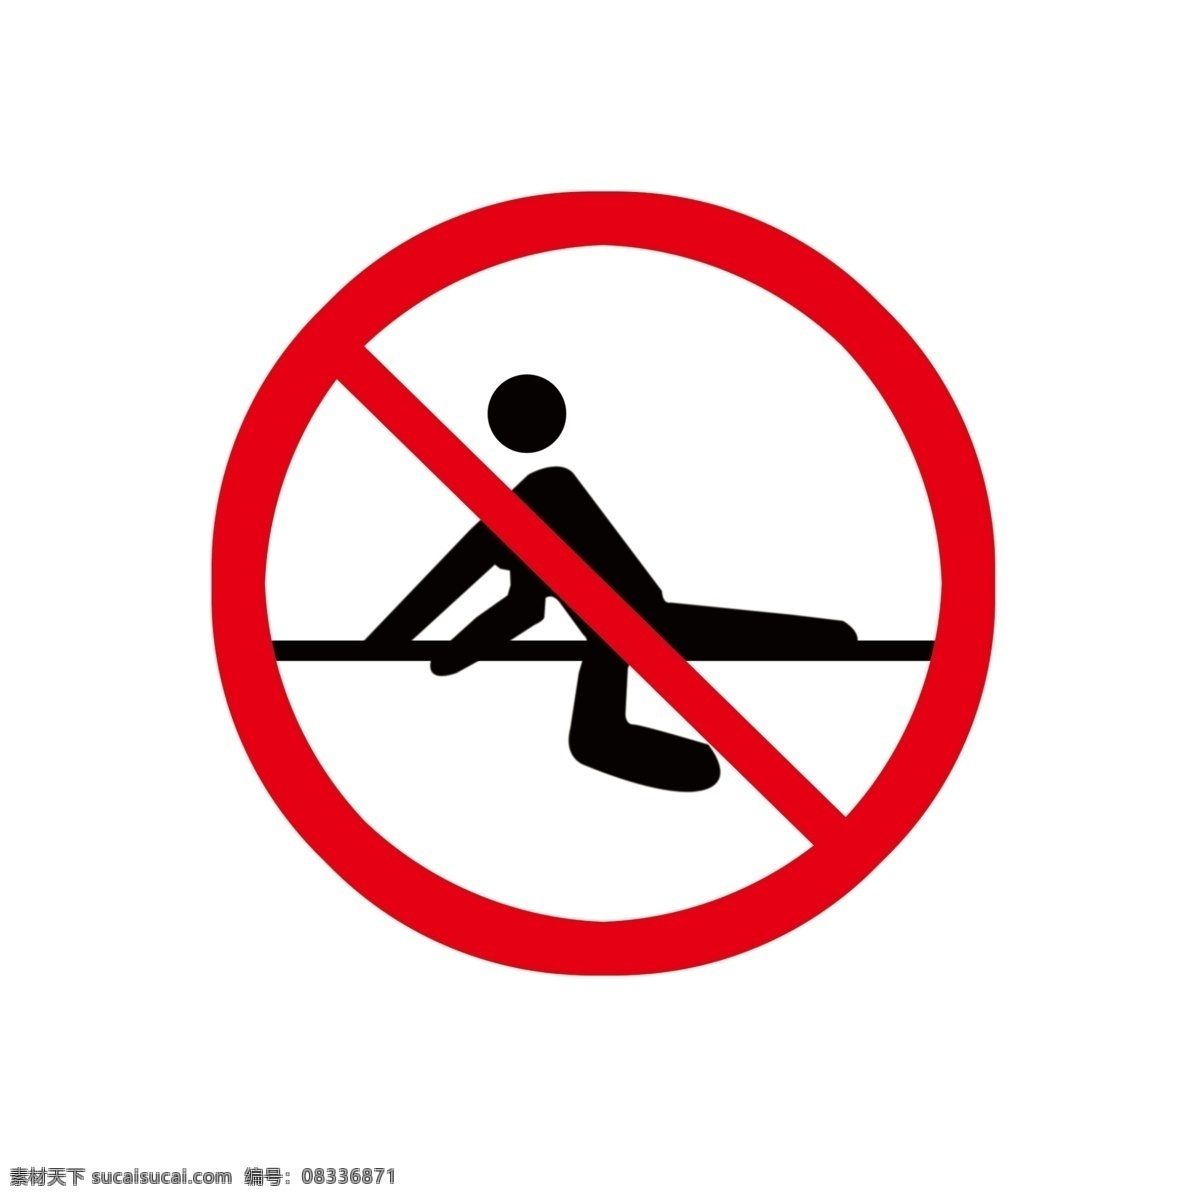 禁止翻爬 翻起护栏标志 禁止 攀爬 标志 方便 快捷 简易 标志图标 公共标识标志